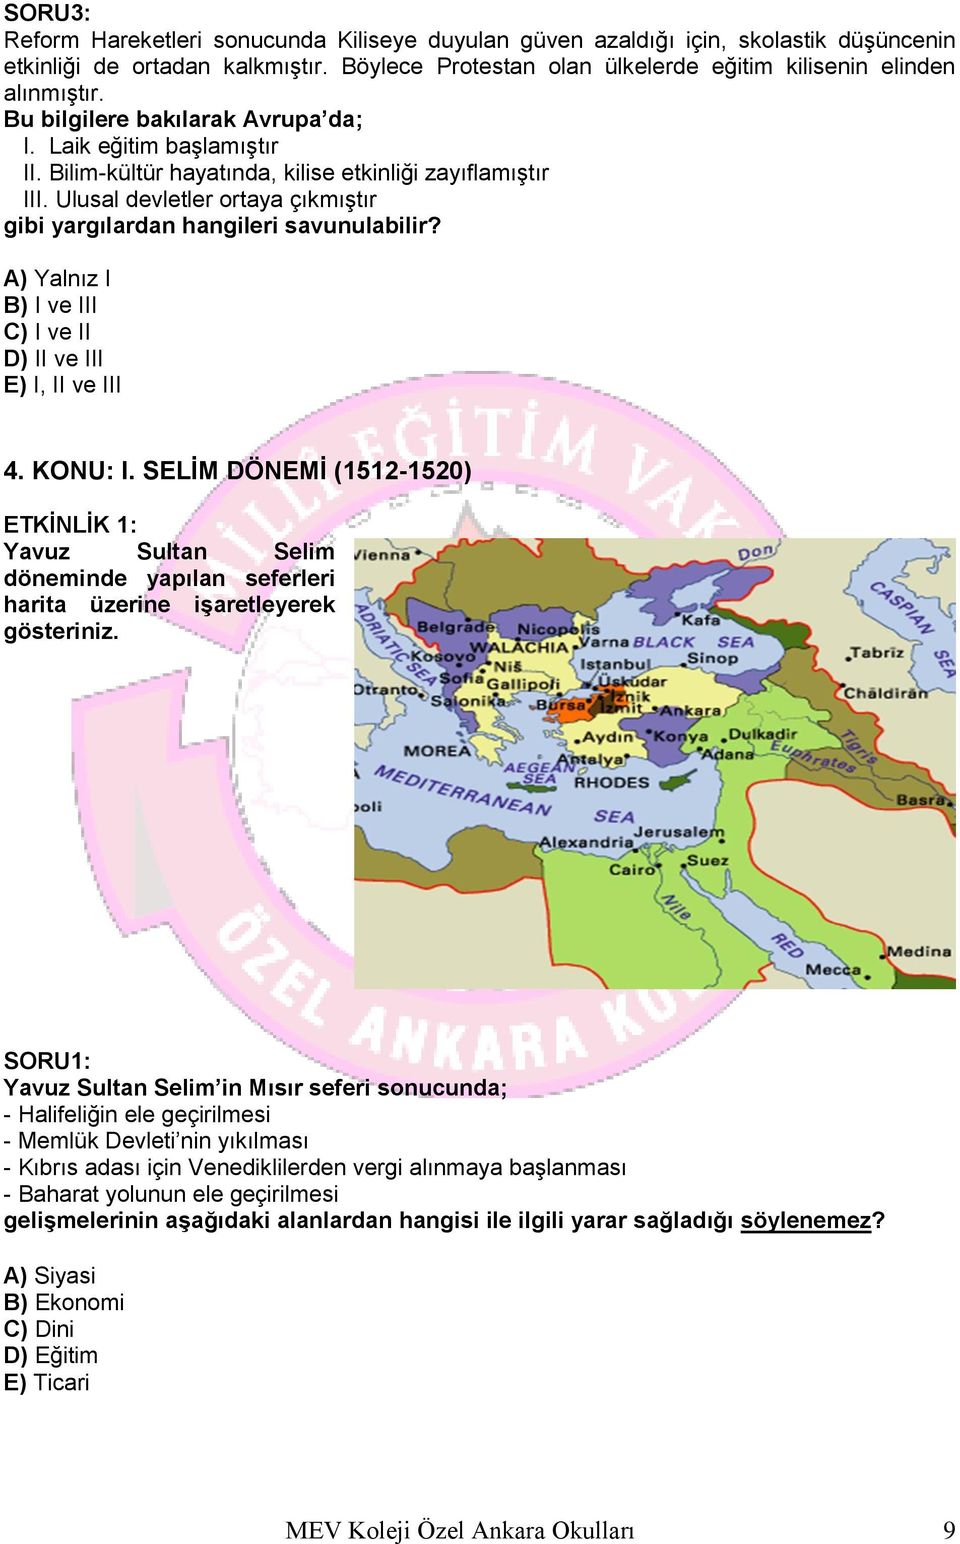 A) Yalnız I B) I ve III C) I ve II D) II ve III E) I, II ve III 4. KONU: I. SELİM DÖNEMİ (1512-1520) ETKİNLİK 1: Yavuz Sultan Selim döneminde yapılan seferleri harita üzerine işaretleyerek gösteriniz.